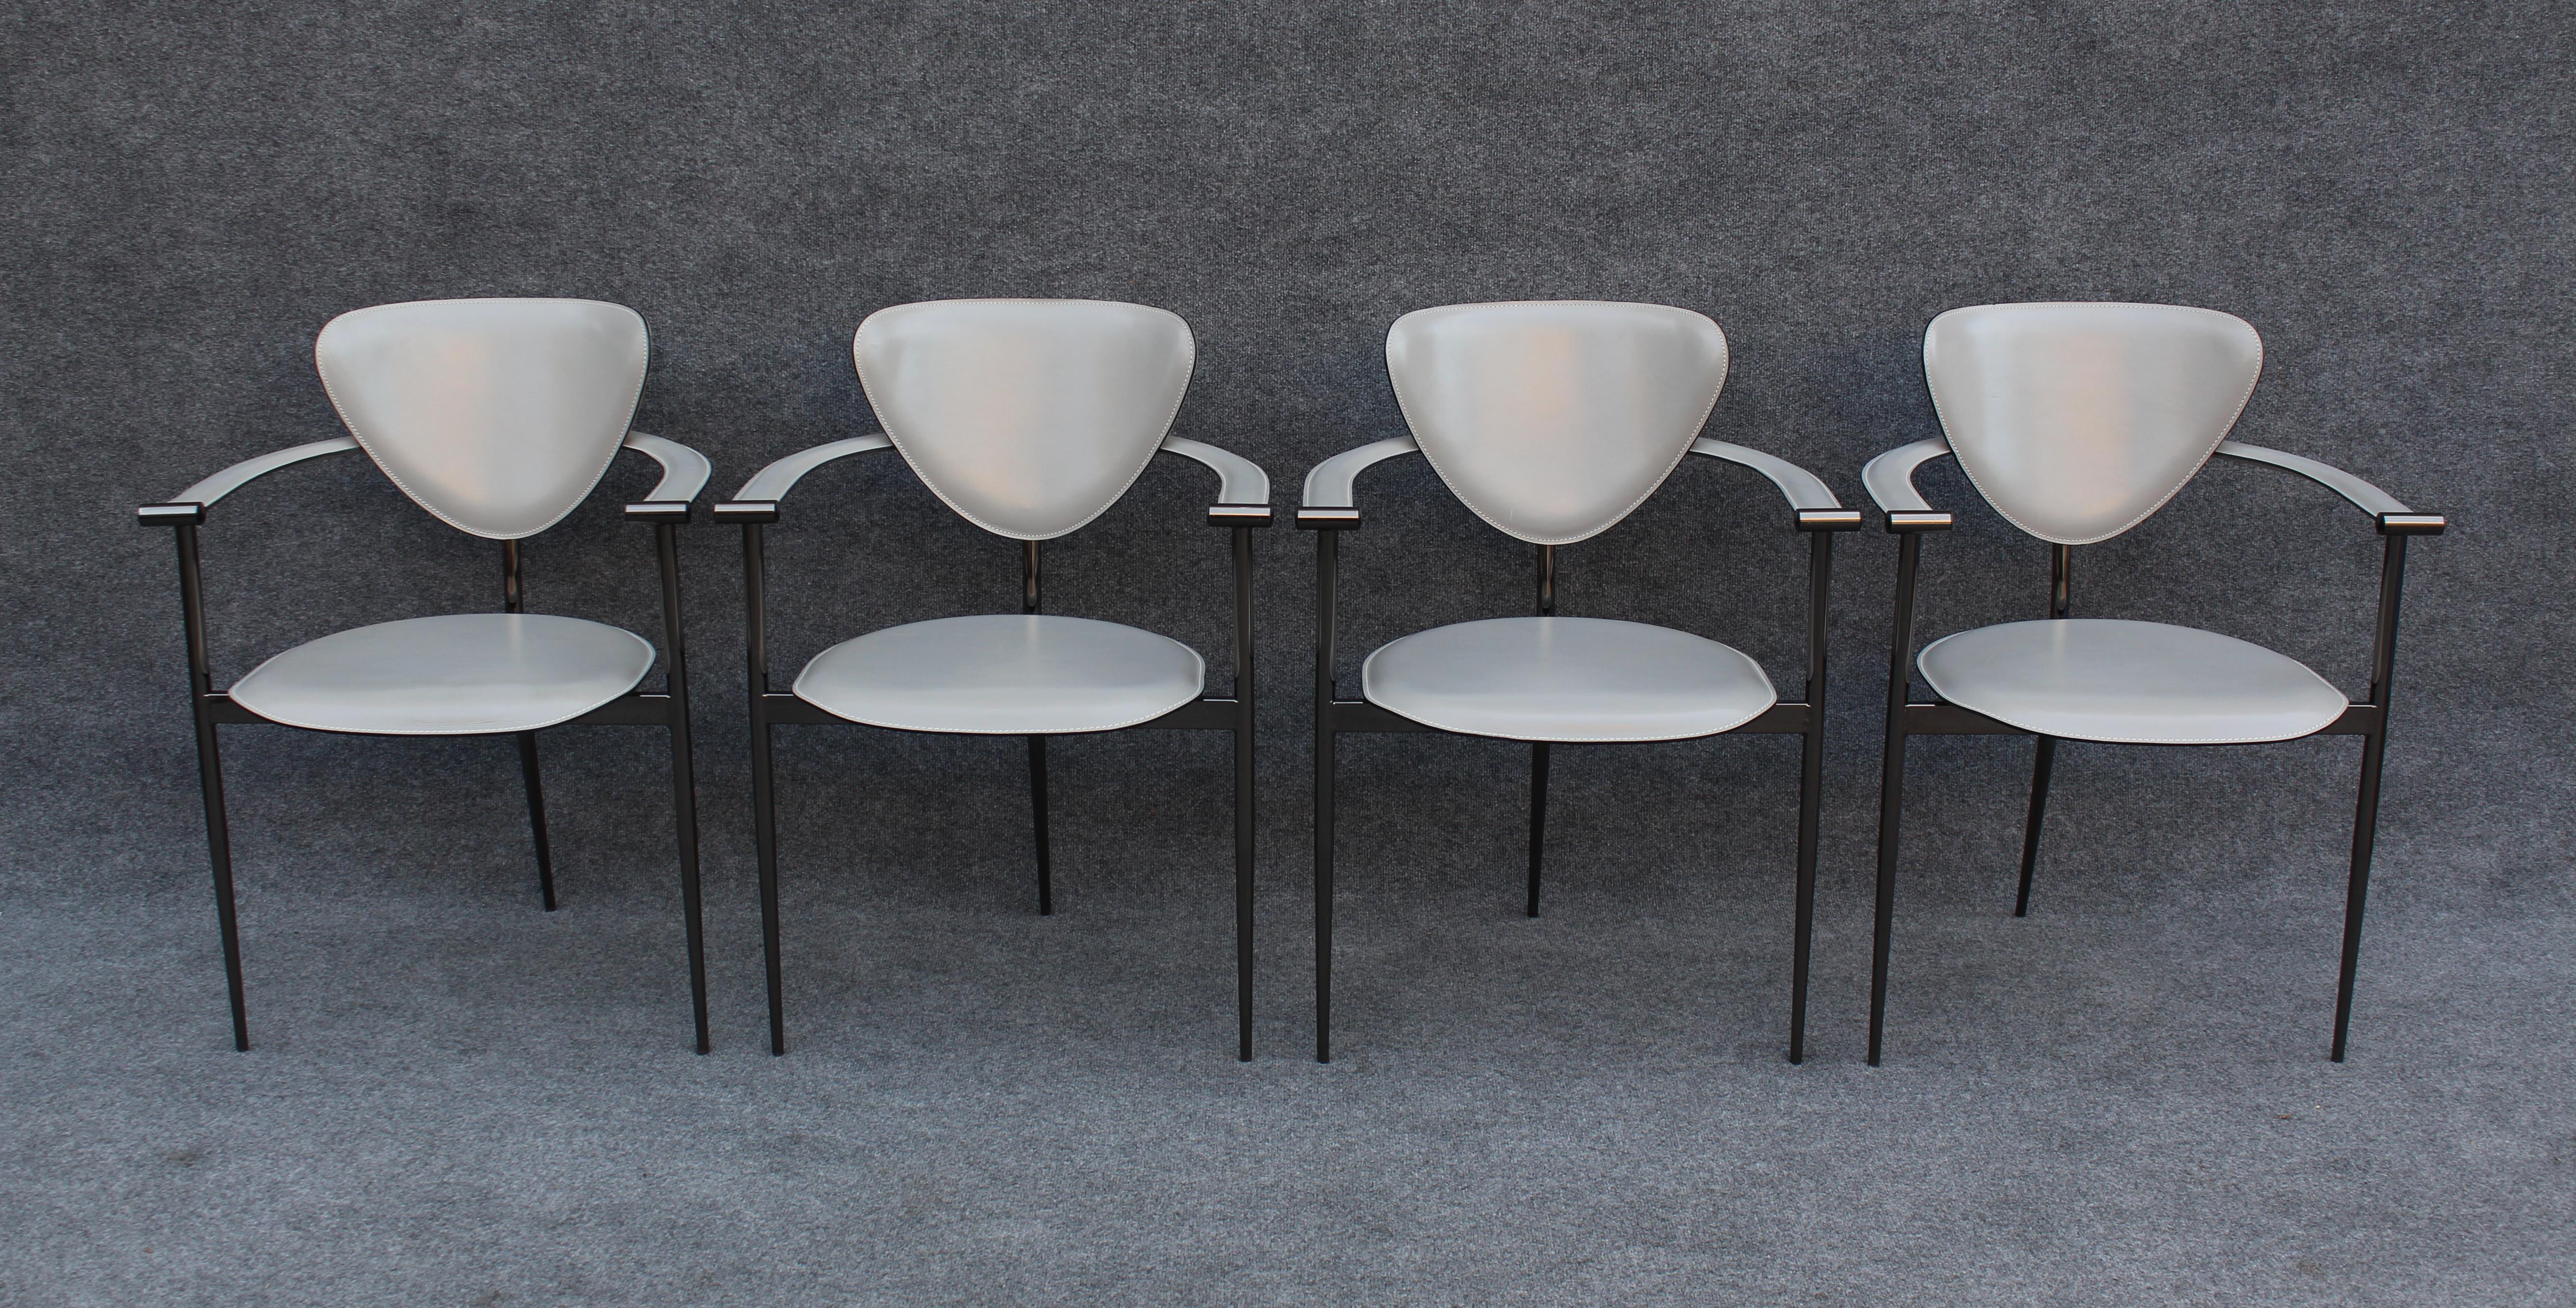 Conçues dans les années 1980 en Italie, ces chaises ont été fabriquées par Arrben, une petite mais prestigieuse entreprise de design et de fabrication. Au fil des ans, la chaise 